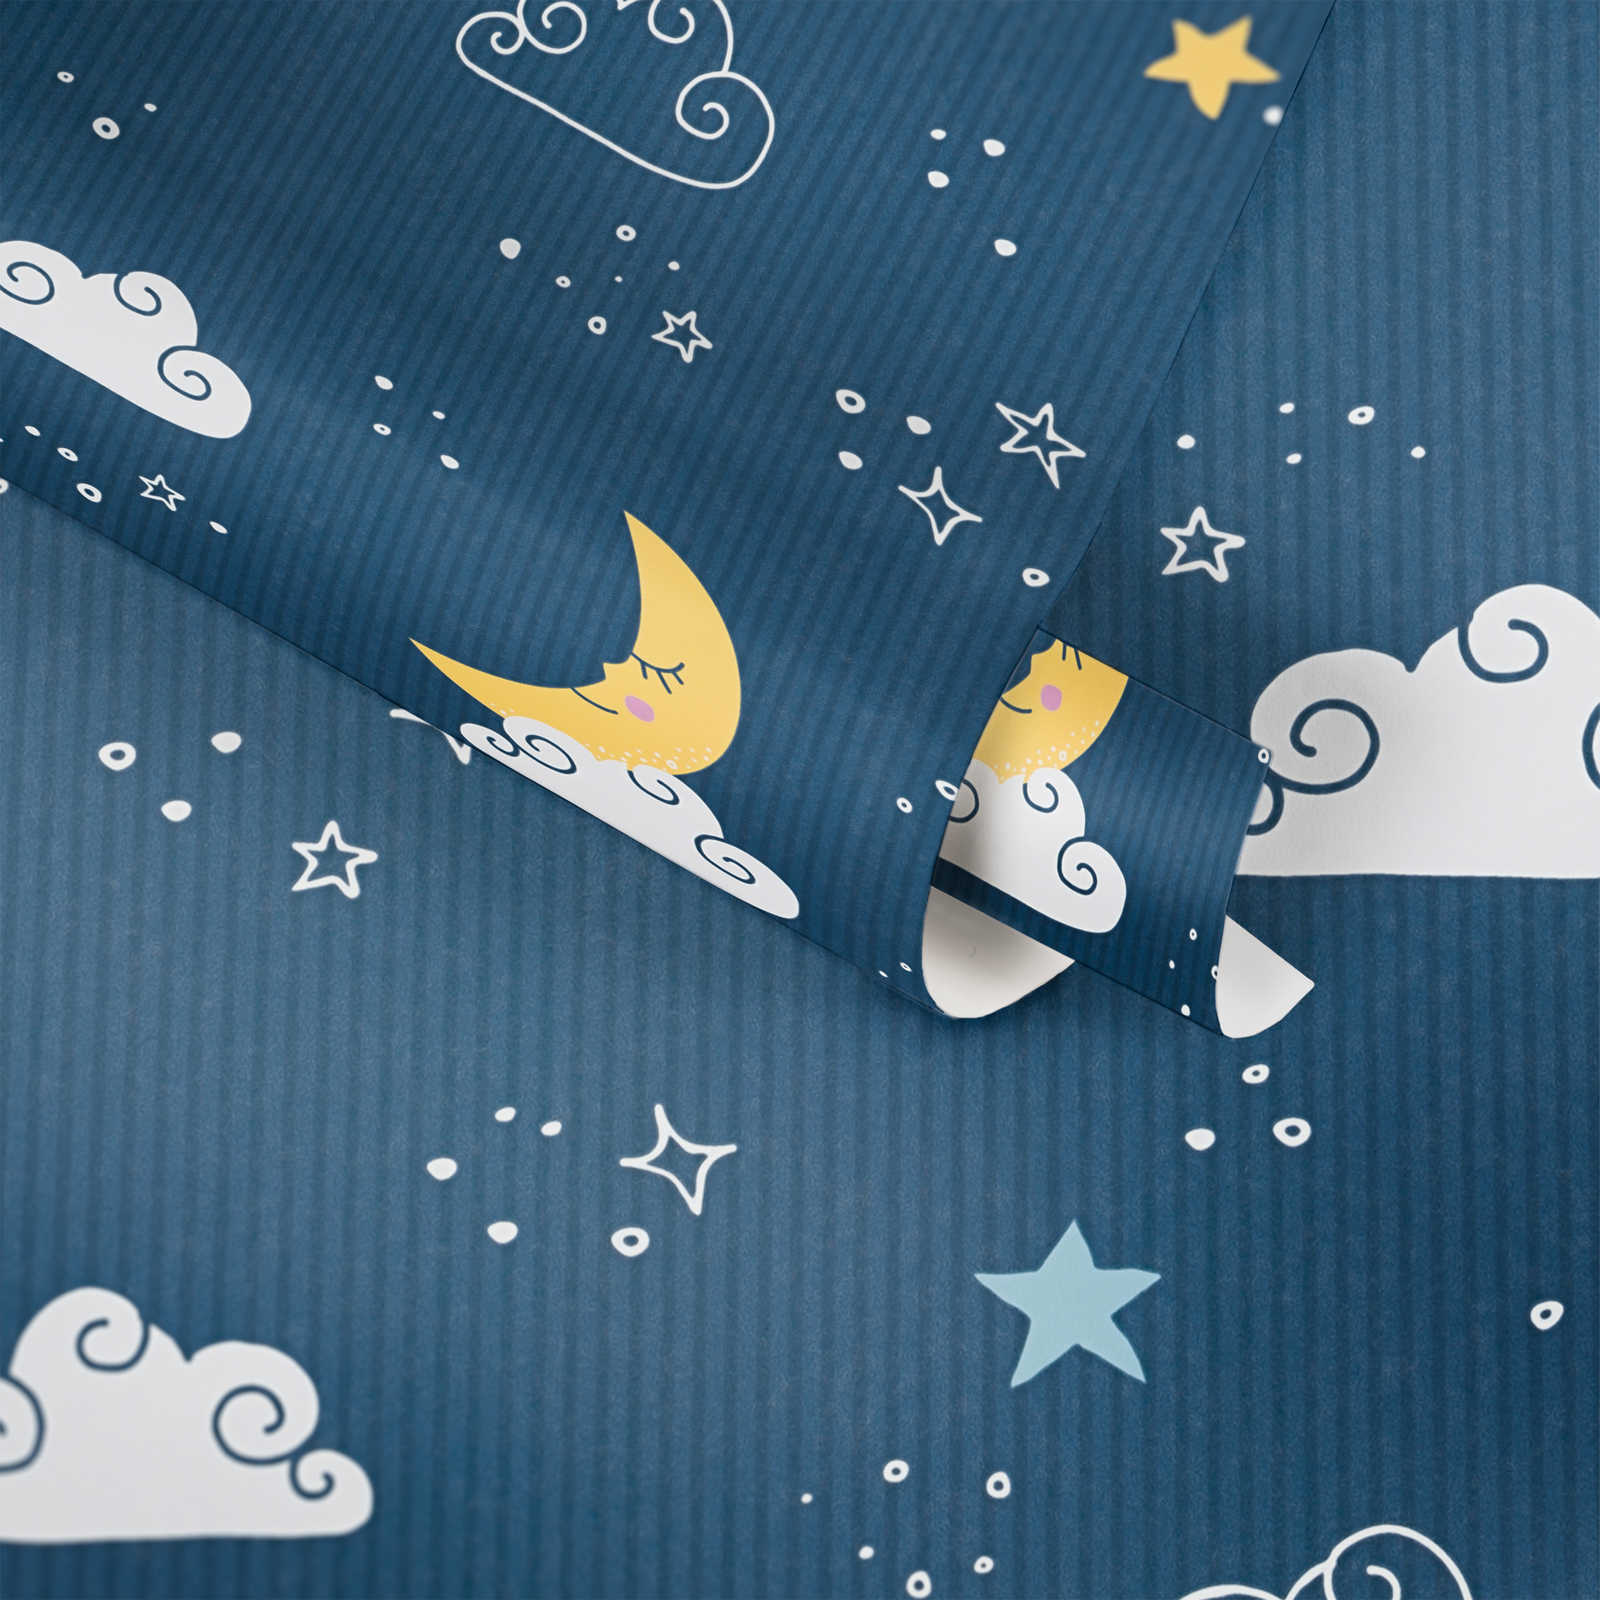             Kinderzimmer Tapete Nachthimmel – Blau, Weiß, Gelb
        